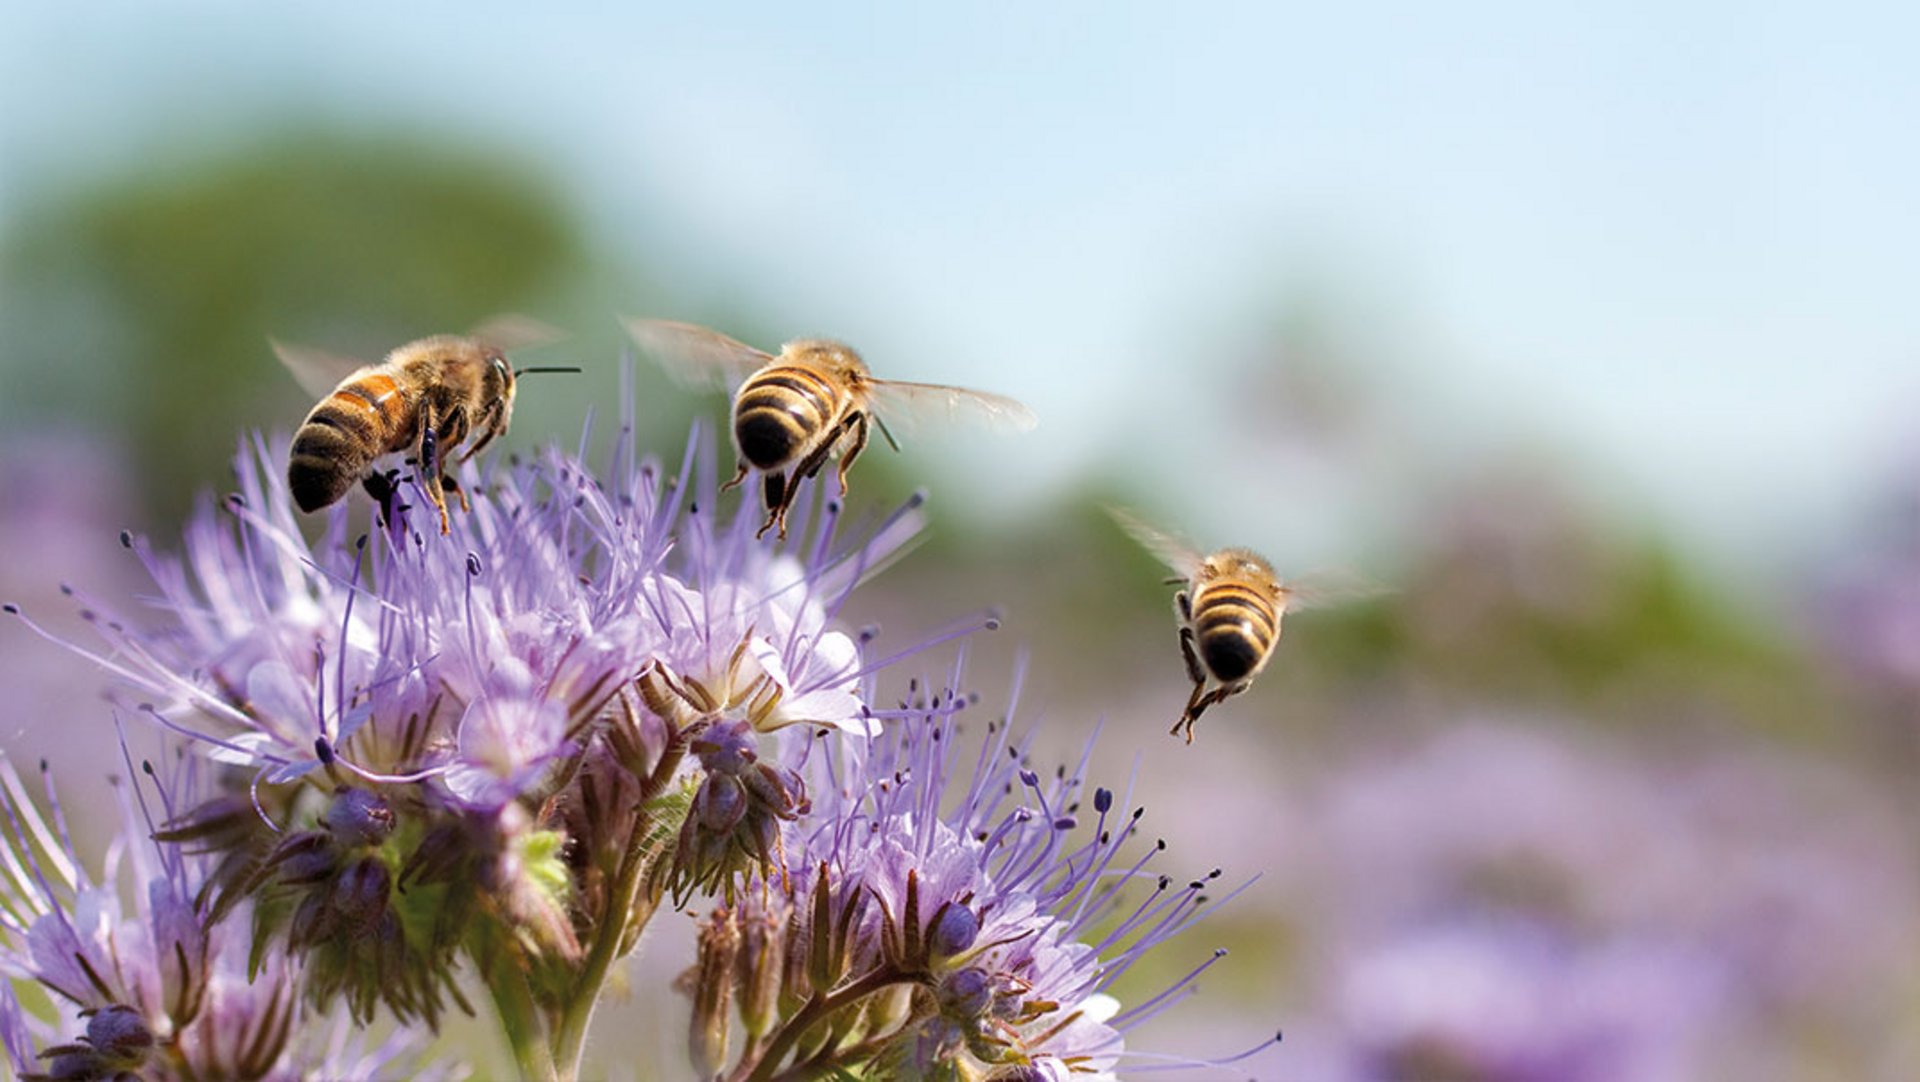 Über einer lila blühenden Phacelia Blüte schweben drei Bienen auf der Suche nach Nektar, bei Sonnenschein und blauem Himmel